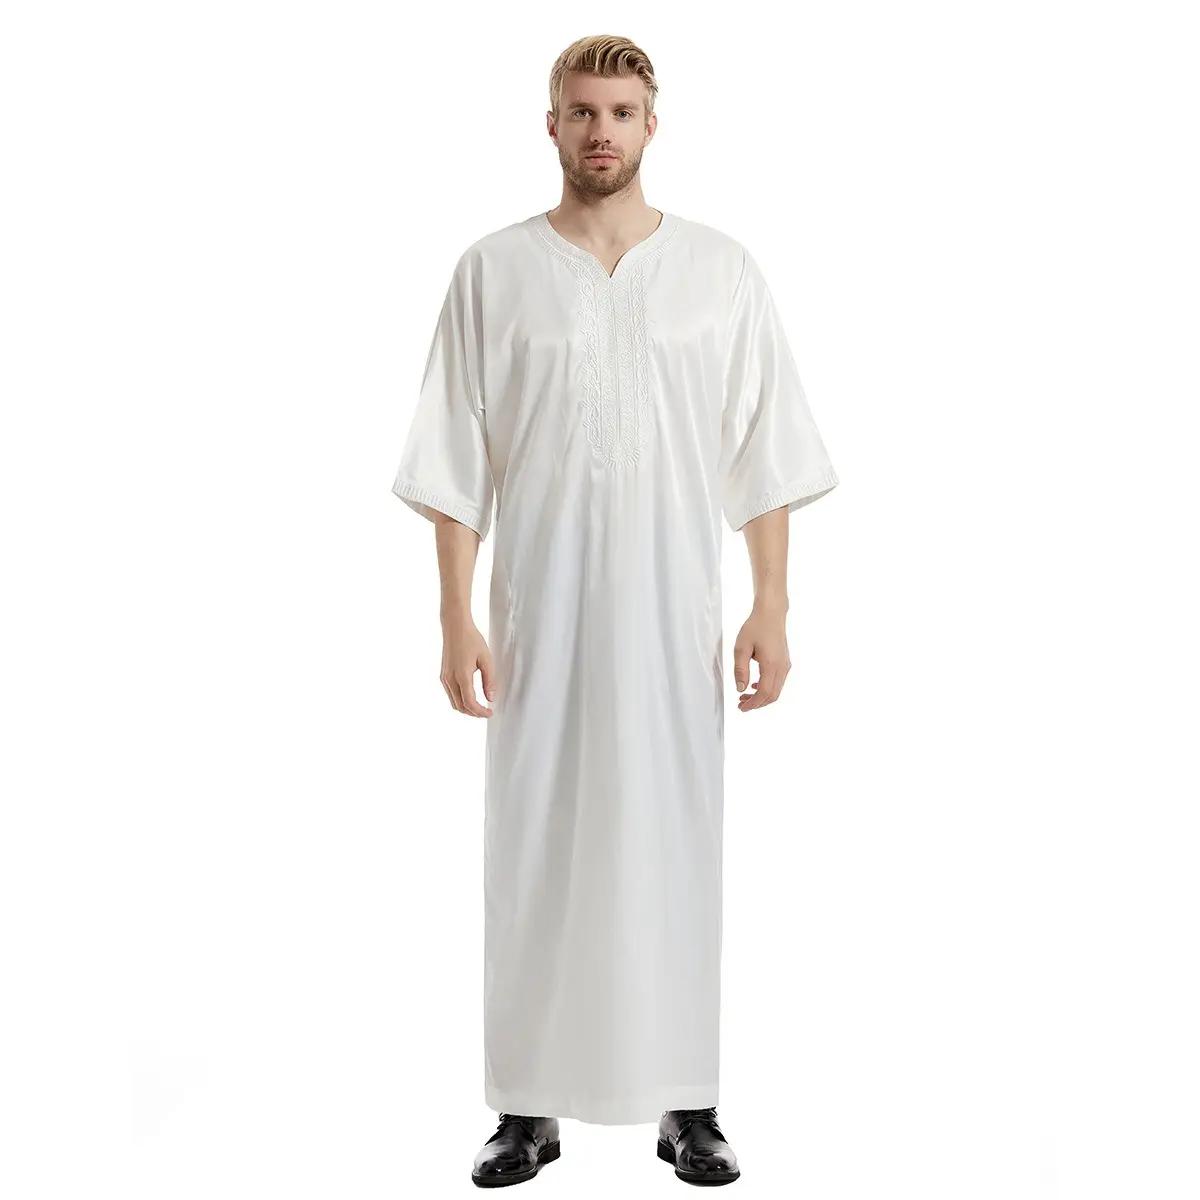 Sıcak satış arapça müslüman Thobe nakış ve yan cepler ile İslami giyim Thawb Robe erkekler için M0049